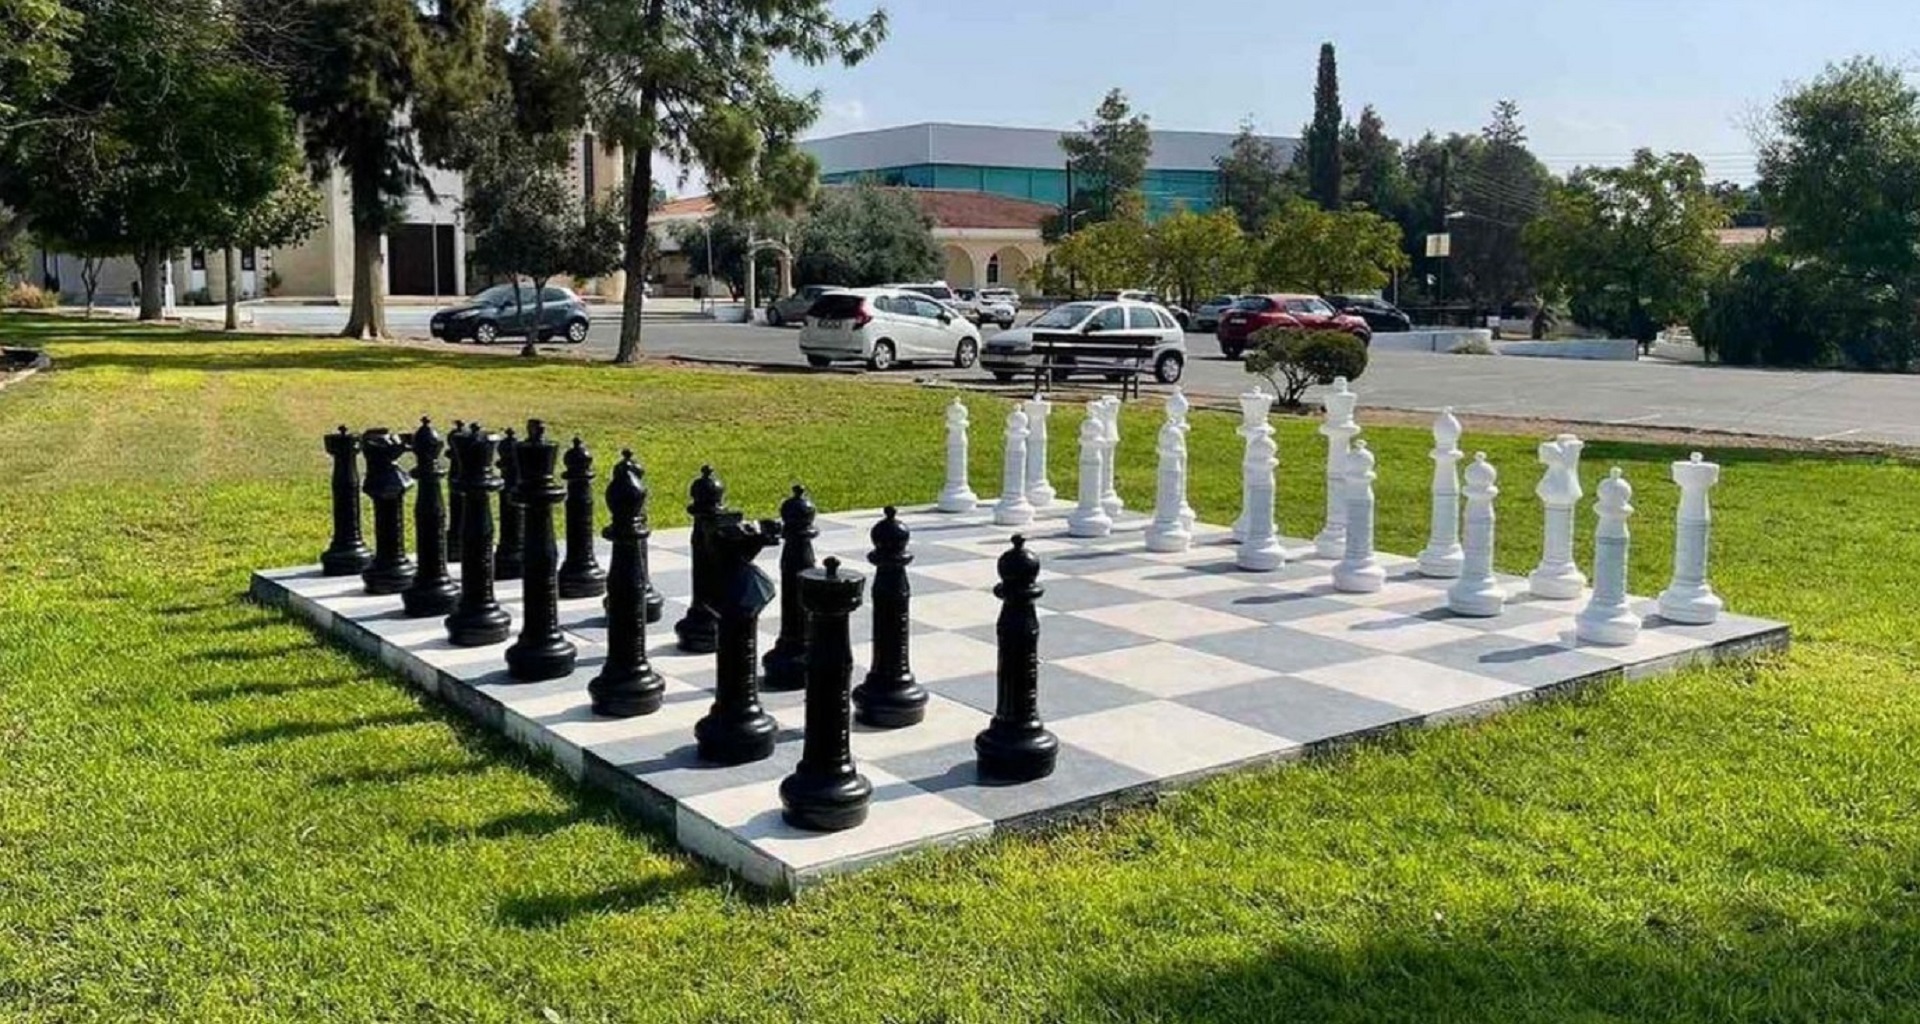 Λευκωσία: Το νέο installation που μάς καλεί να παίξουμε σκάκι!